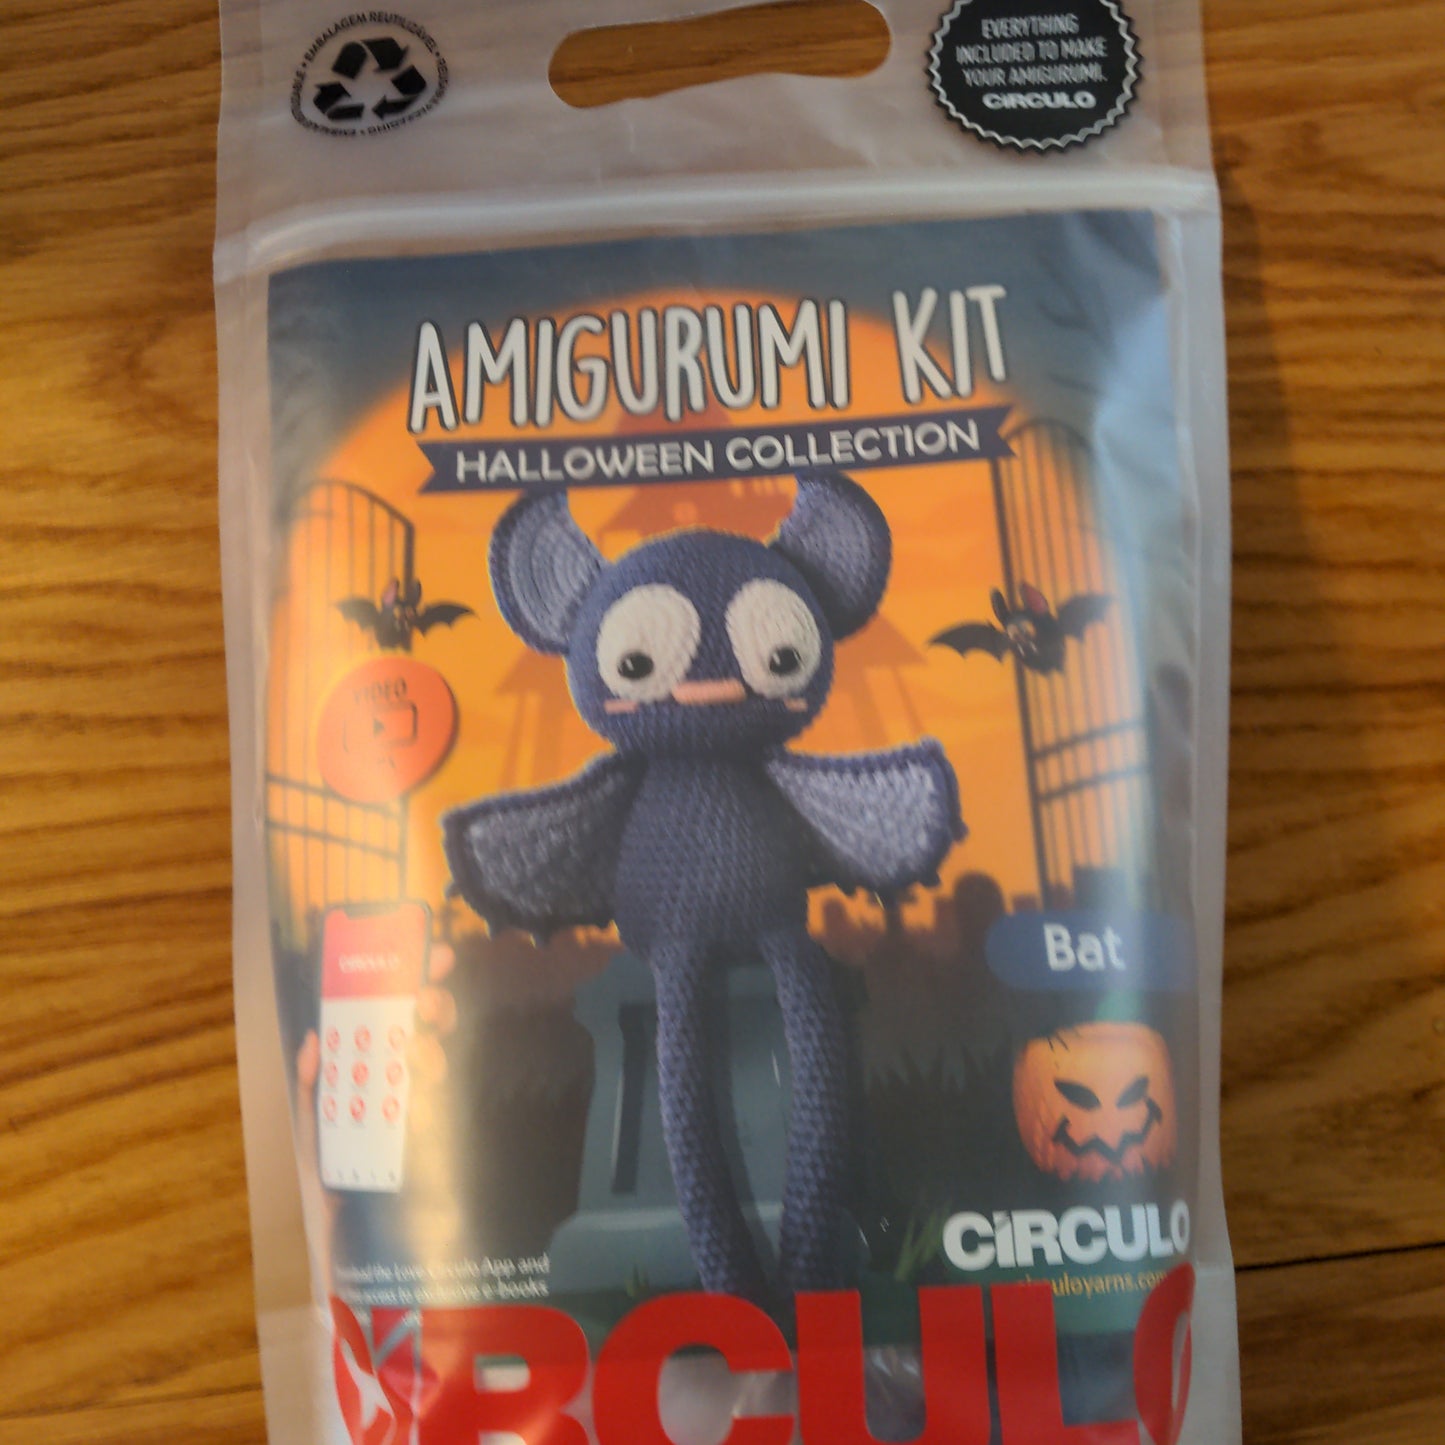 Amigurumi Kit Halloween Collection